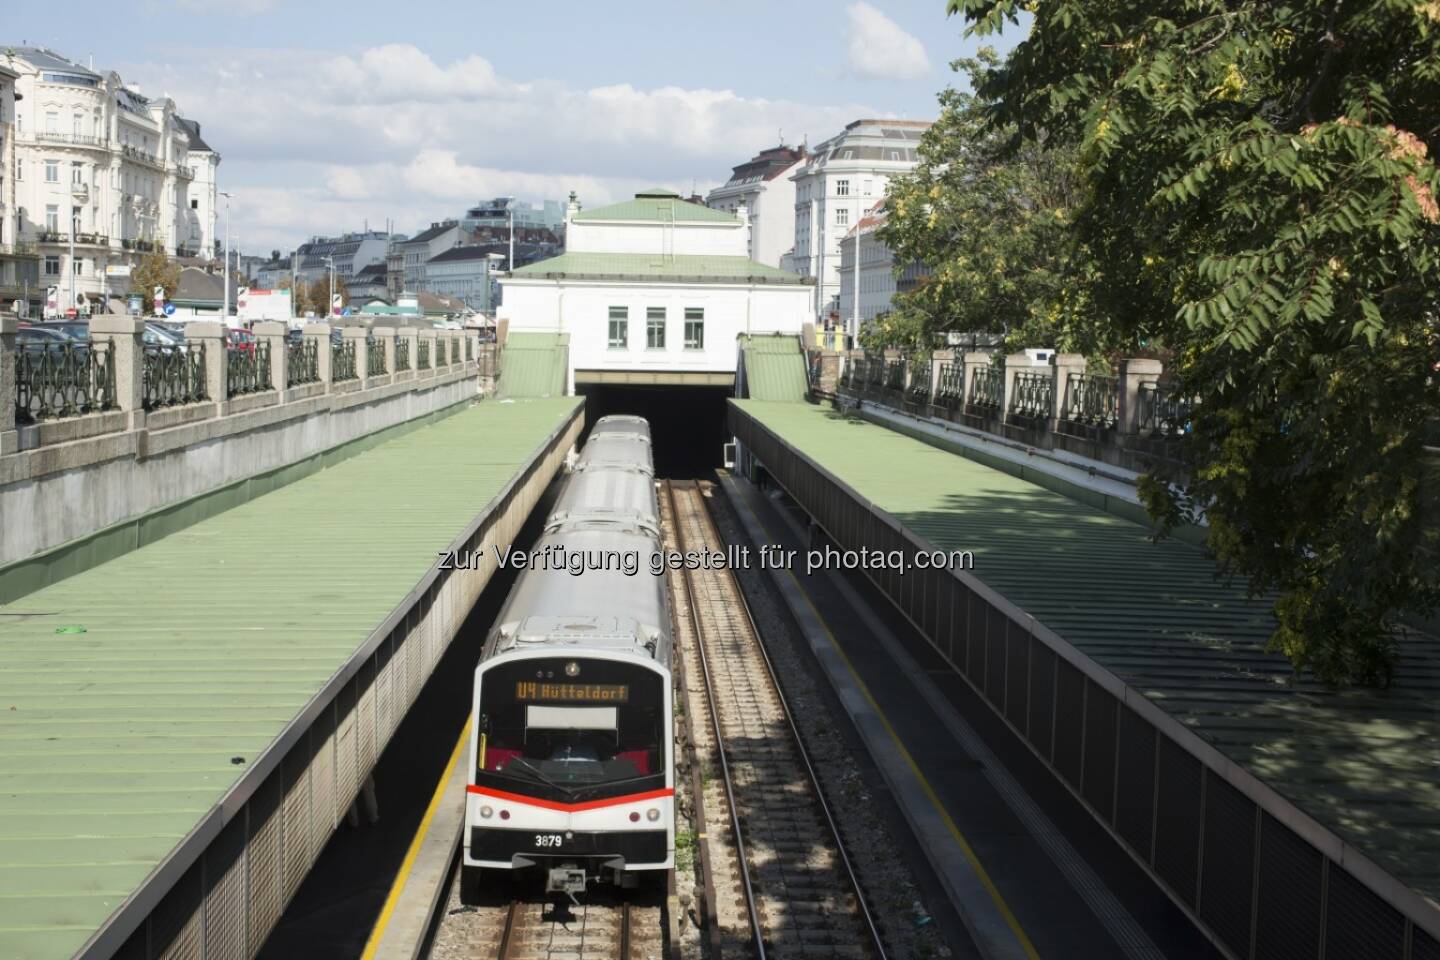 Siemens hat von den Wiener Linien die Aufträge erhalten die U-Bahnlinie U4 der Stadt Wien in den nächsten Jahren signaltechnisch auf den neuesten Stand der Technik zu bringen. Zum Lieferumfang gehören elektronische Stellwerke vom Typ Trackguard Sicas ECC sowie die Einbindung des automatischen Zugbeeinflussungssystem Trainguard LZB513. (Bild: Siemens)